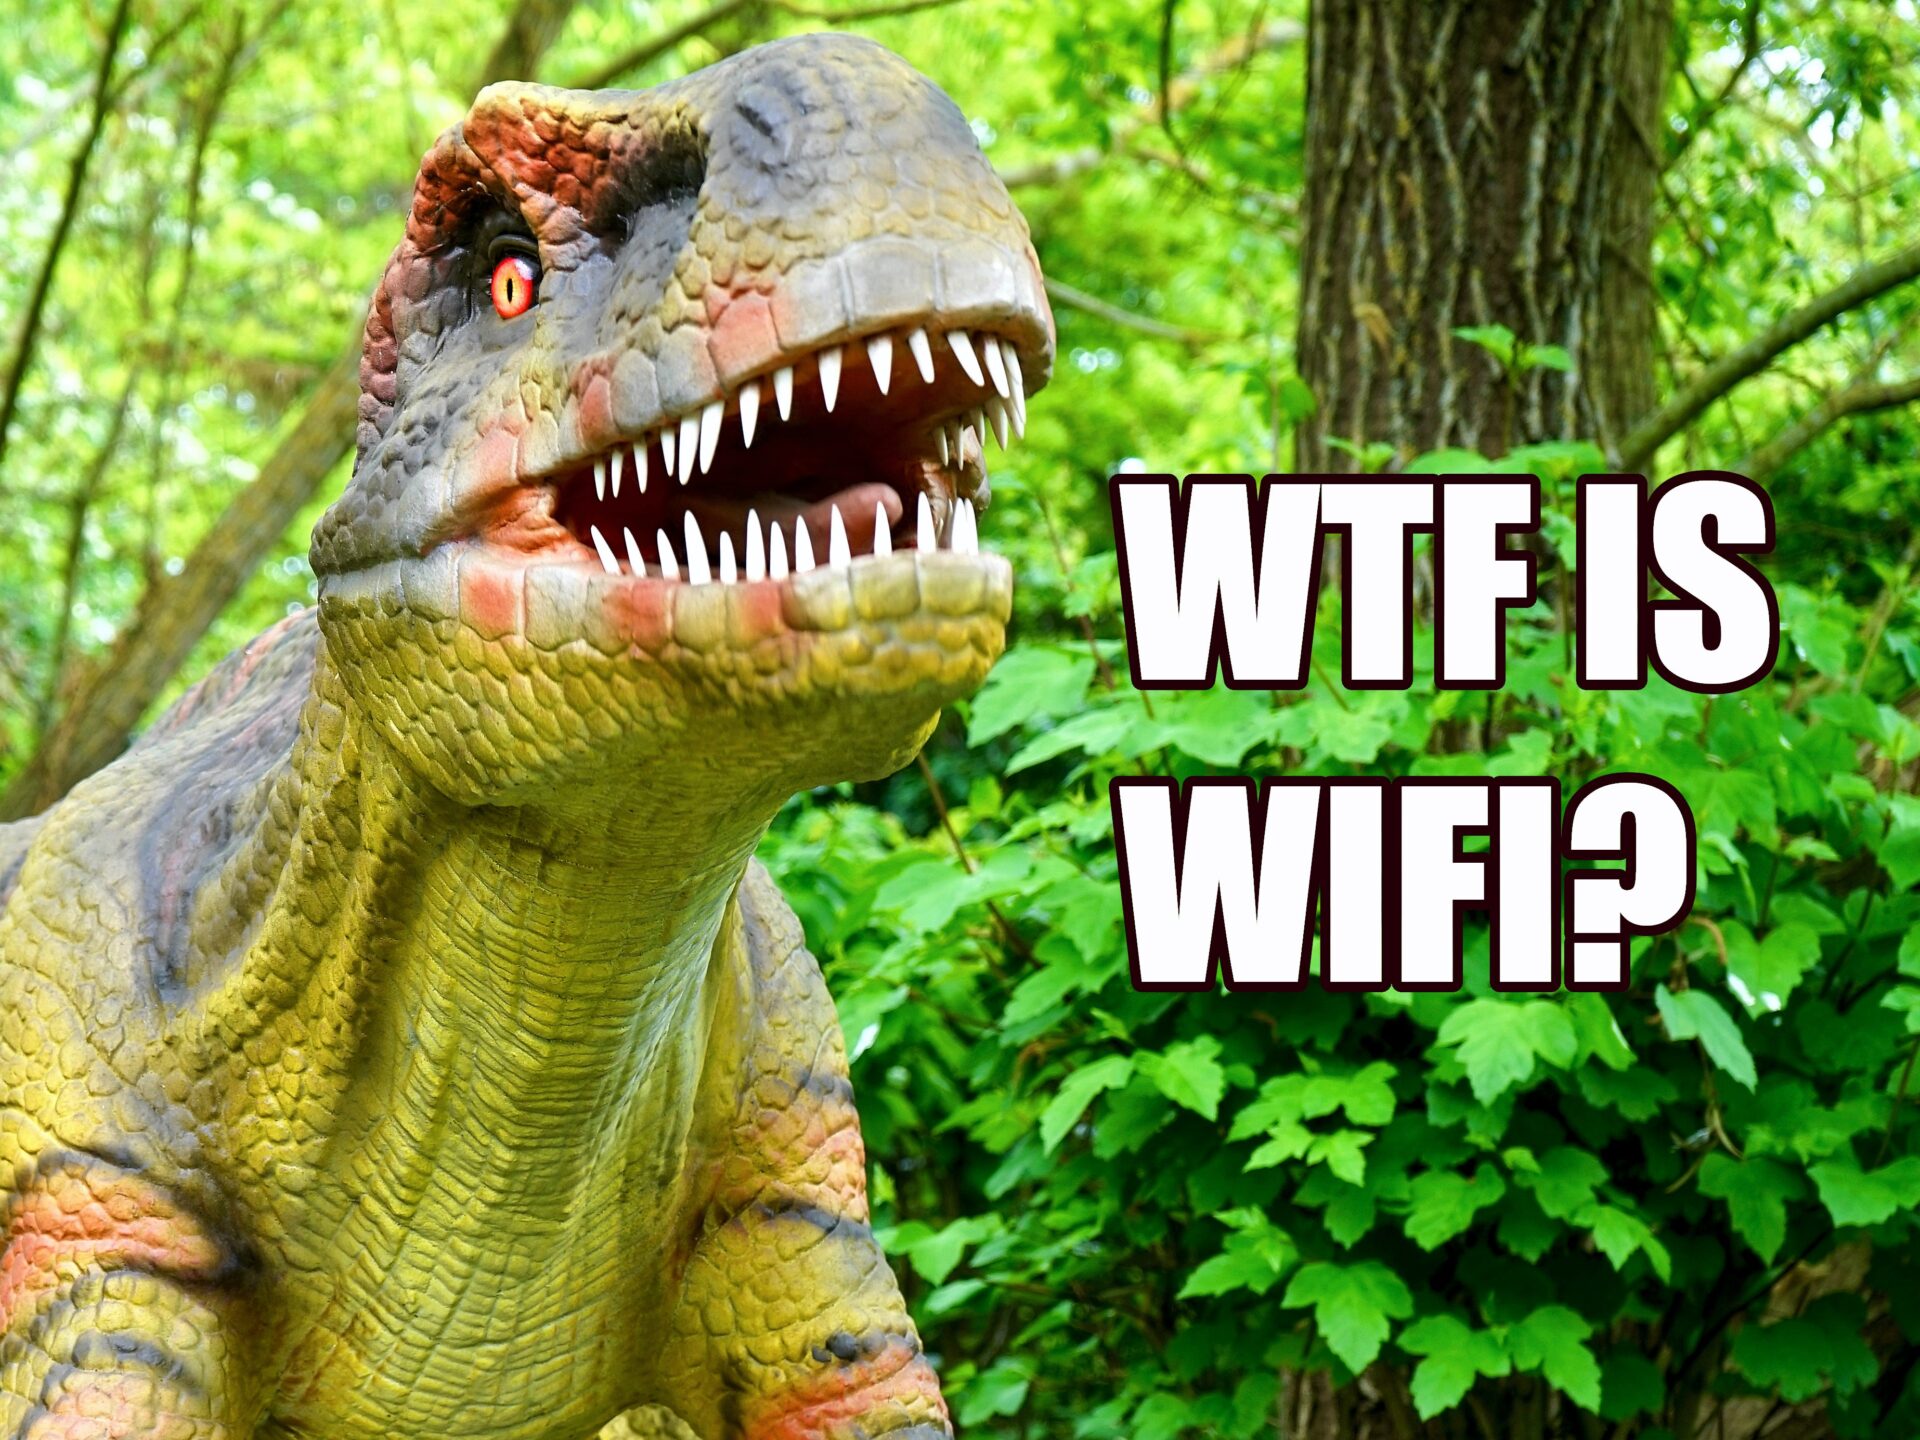 WTF is wi-fi?